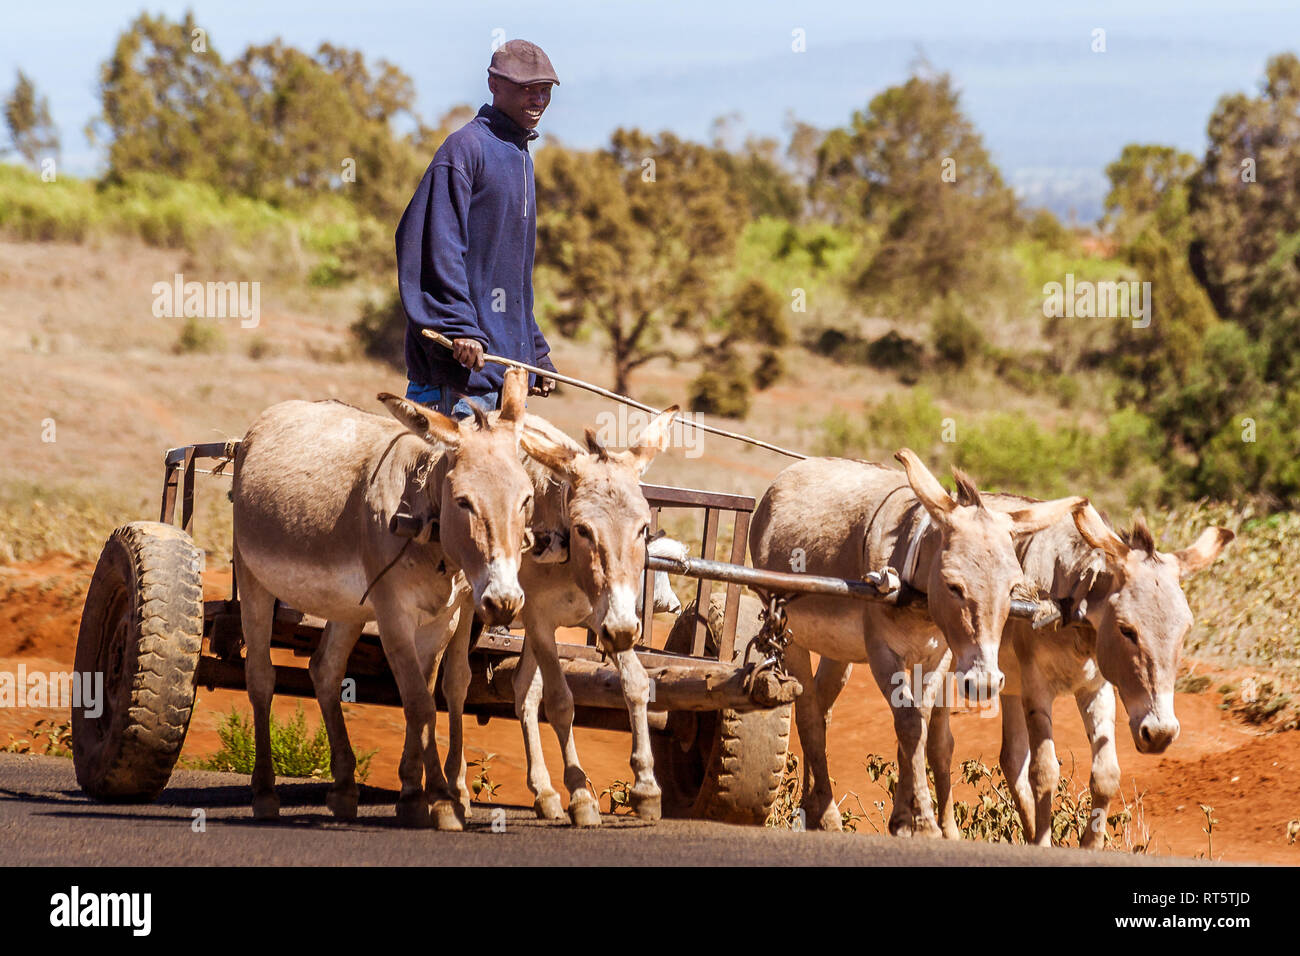 Nanyuki, Kenya, 20 Maggio 2017: keniota agricoltore sul suo carro trainato da quattro asini nella campagna keniota Foto Stock